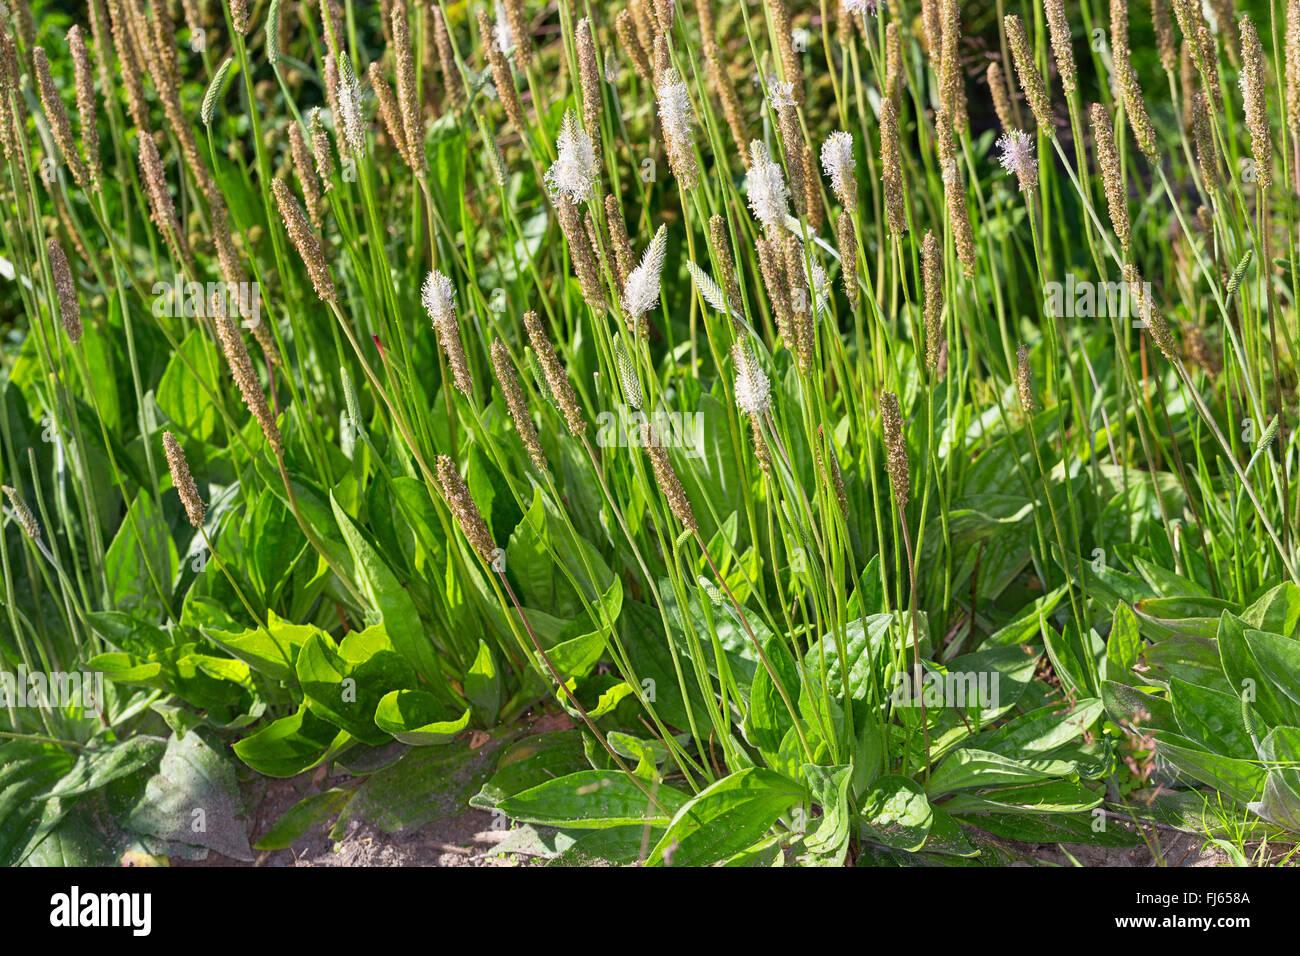 hoary plantain (Plantago media), blooming, Germany Stock Photo